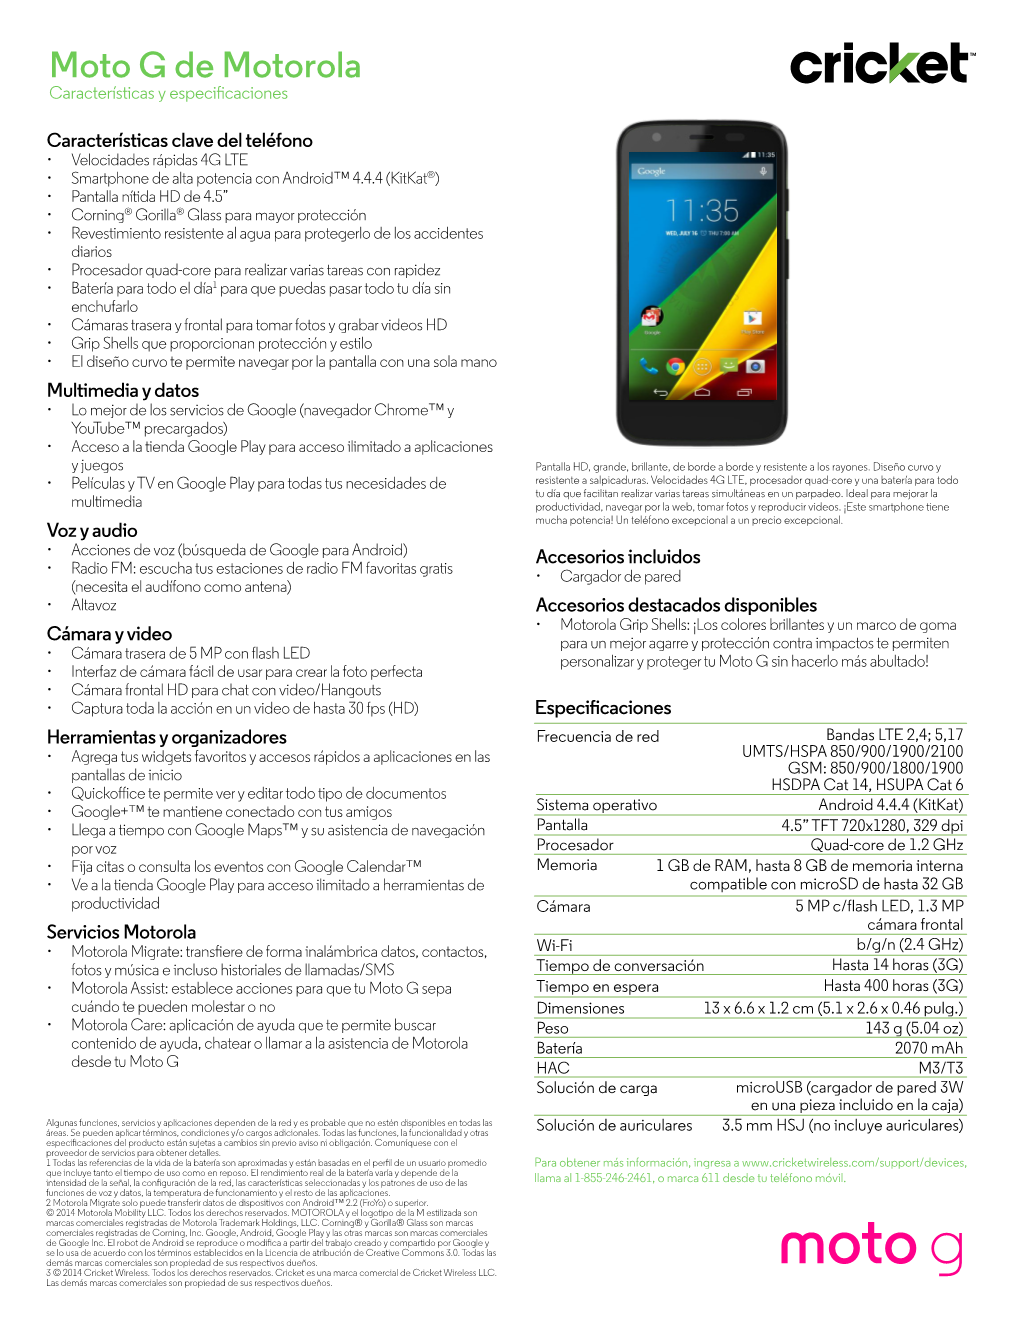 Moto G De Motorola Características Y Especi Caciones